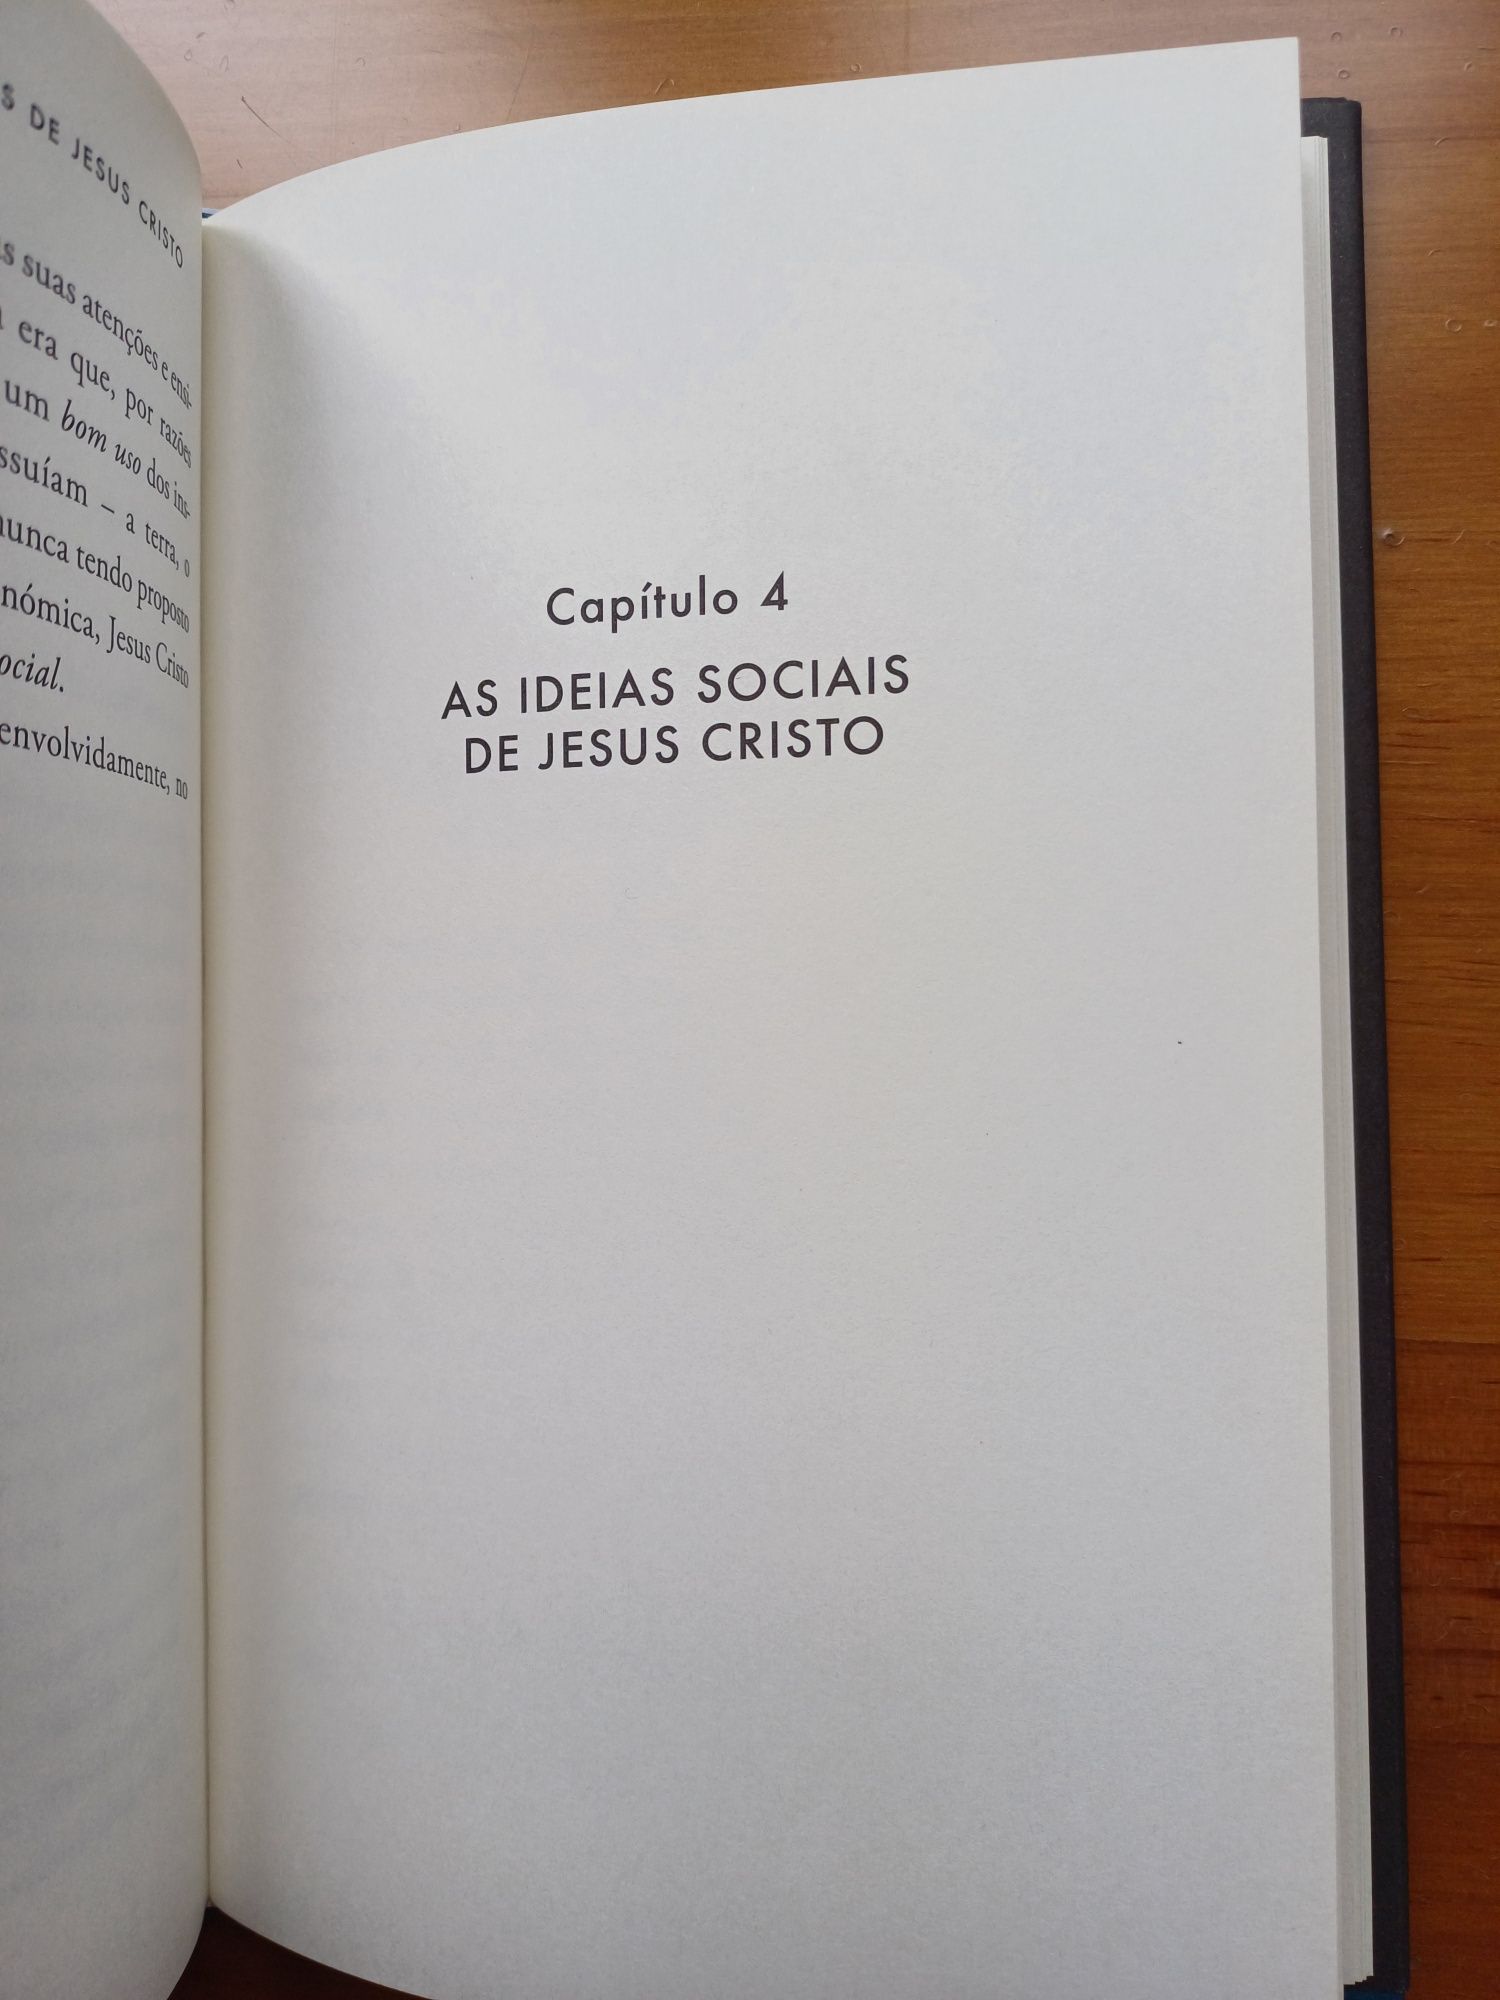 Livro "As ideias políticas e sociais de Jesus Cristo"